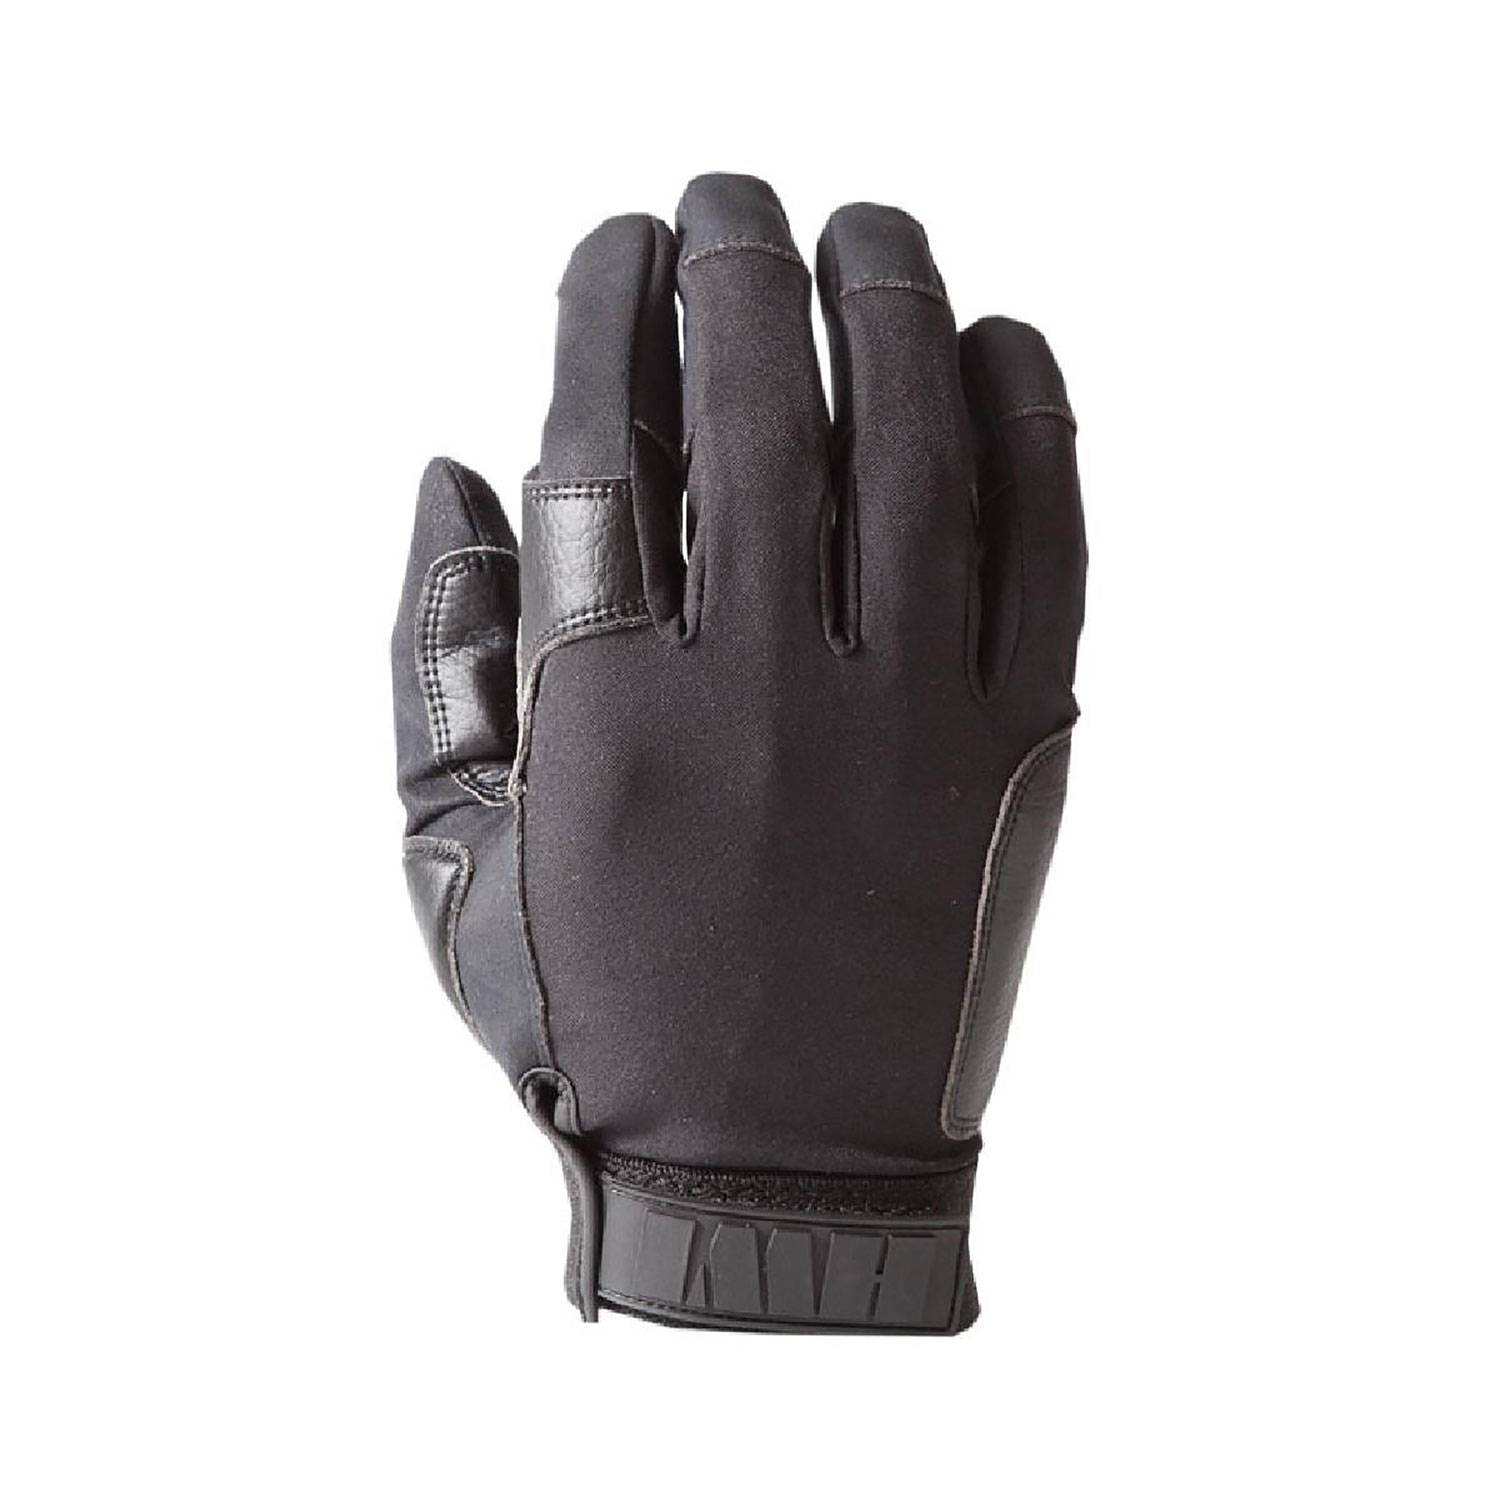 HWI K-9 Handlers Glove